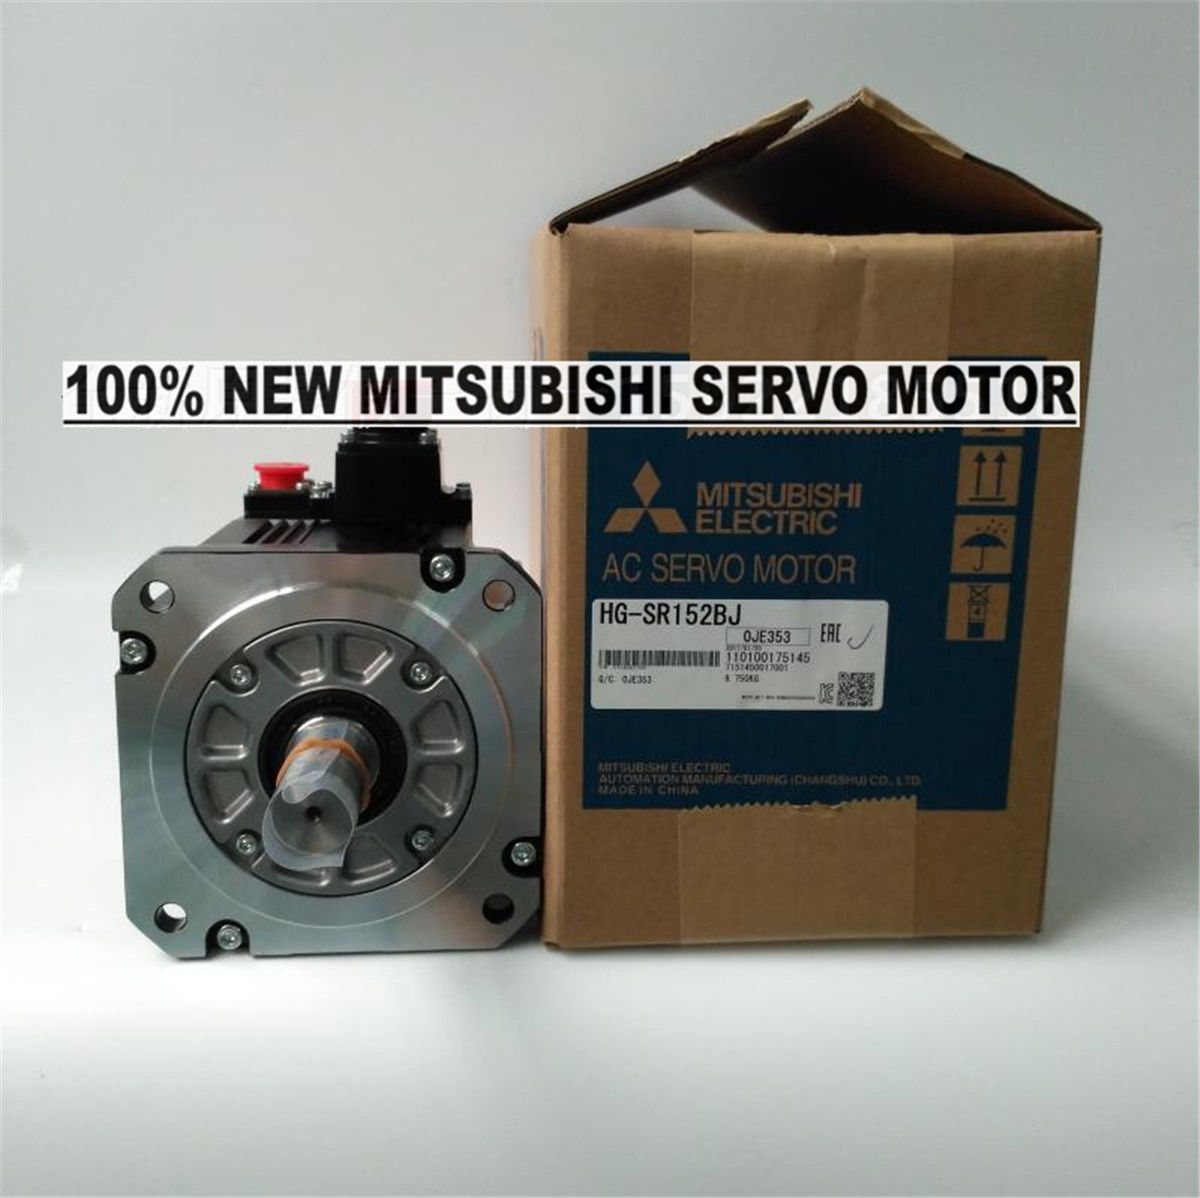 Brand New Mitsubishi Servo Motor HG-SR152BJ in box HGSR152BJ